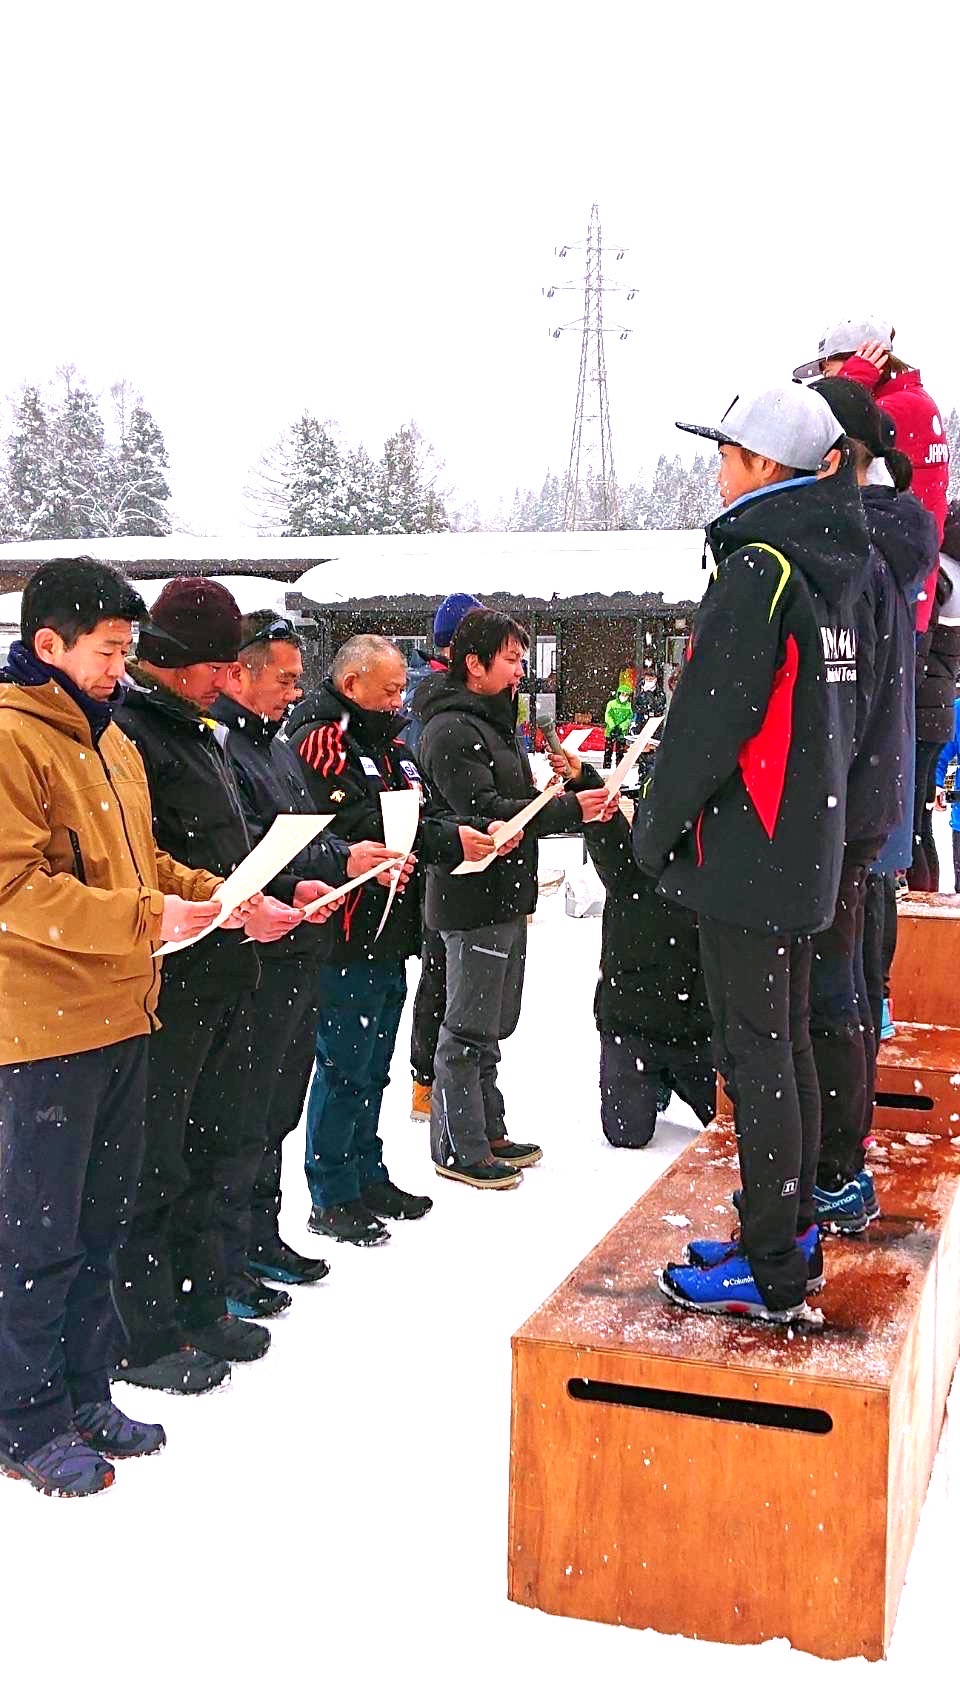 第101回 全日本スキー選手権大会 ノルディック種目コンバインド競技 兼 第12回 信濃毎日新聞社杯 ノルディックコンバインド白馬大会5